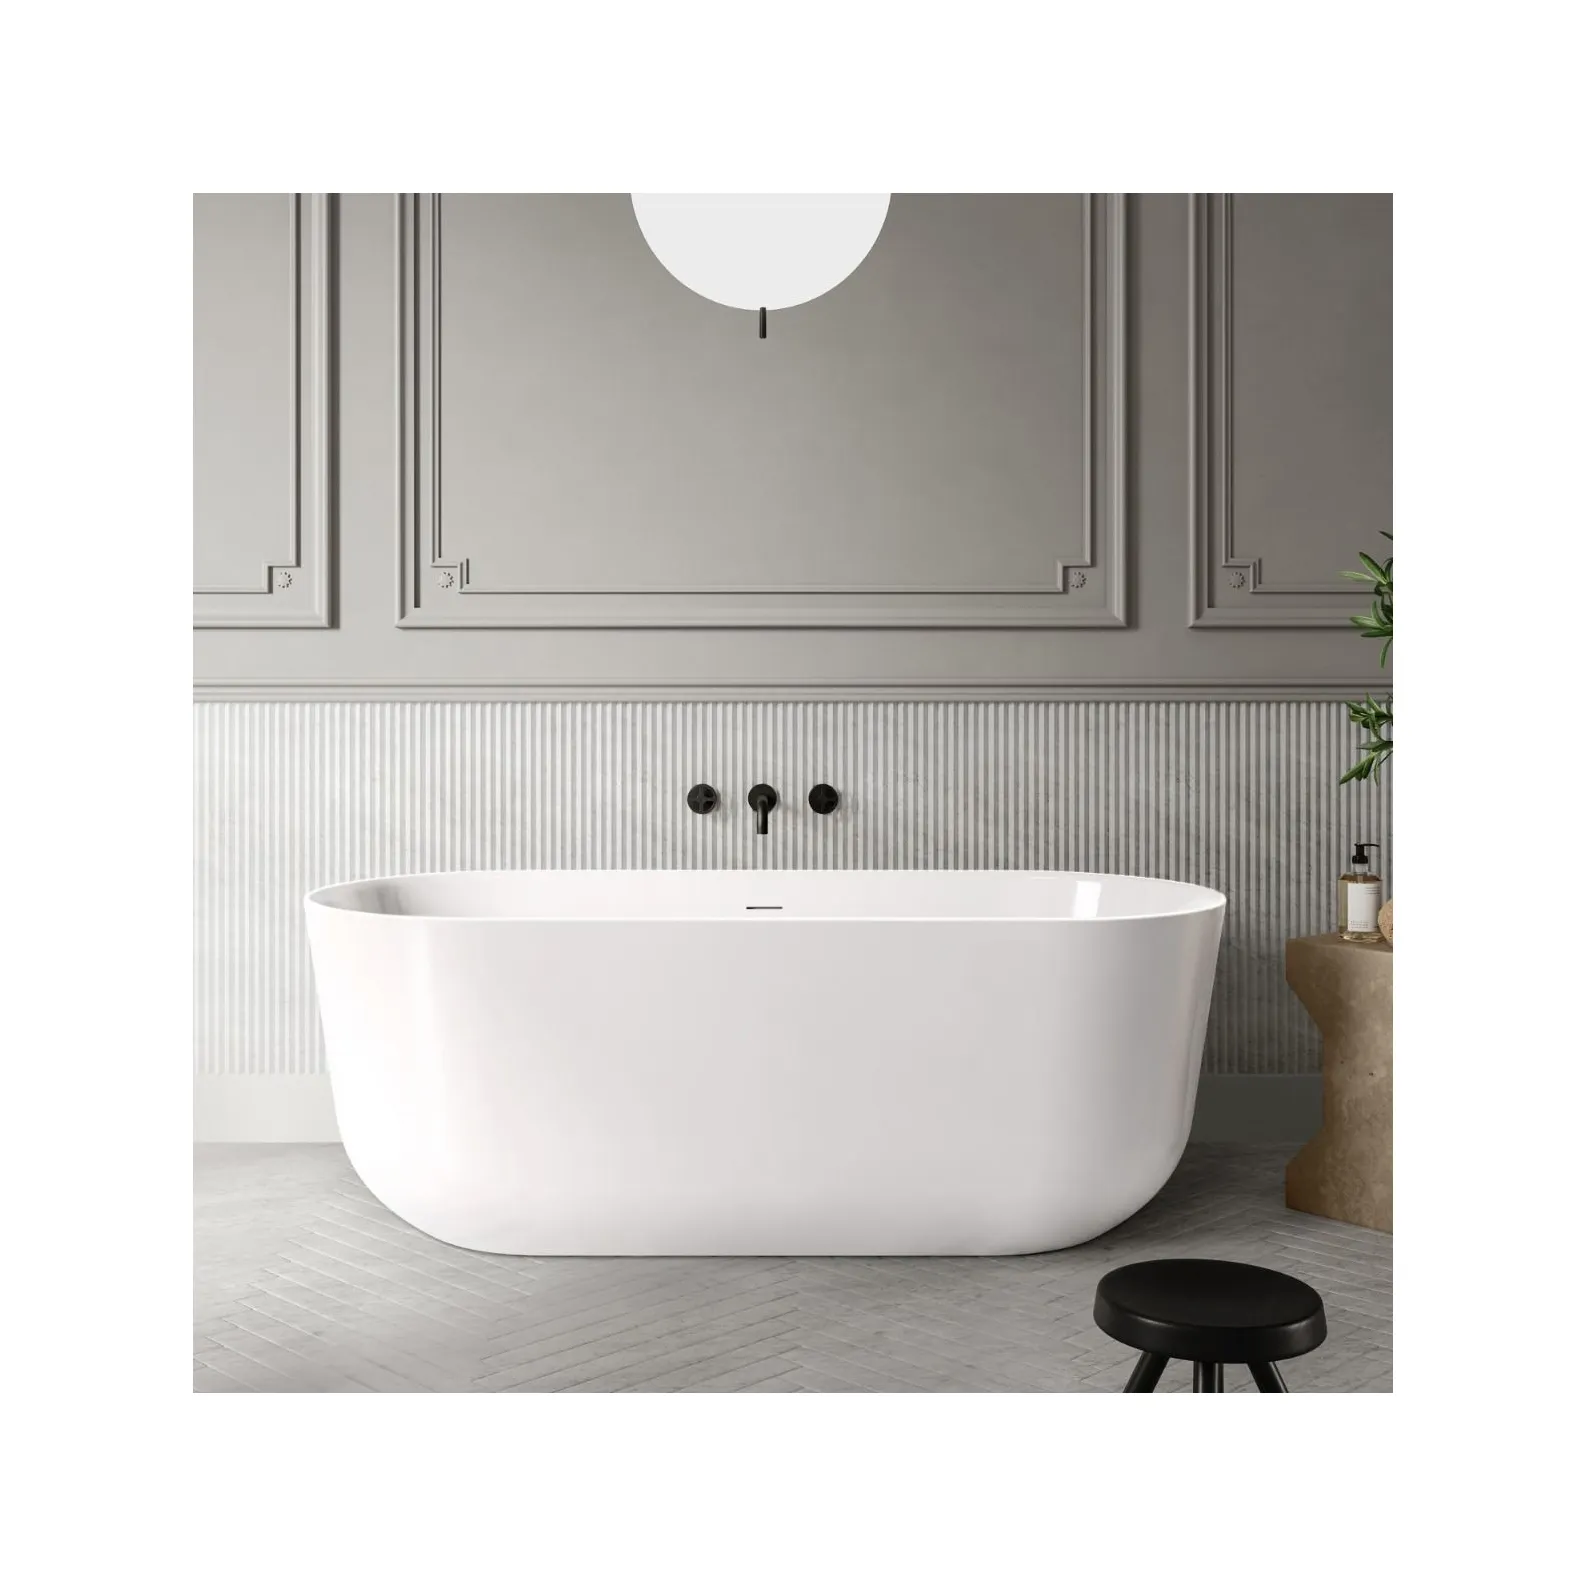 Standard freistehende Badewanne Bad Wasser wanne begehbar in großen Badewannen Indoor Luxus Einweichen Acryl Badewanne